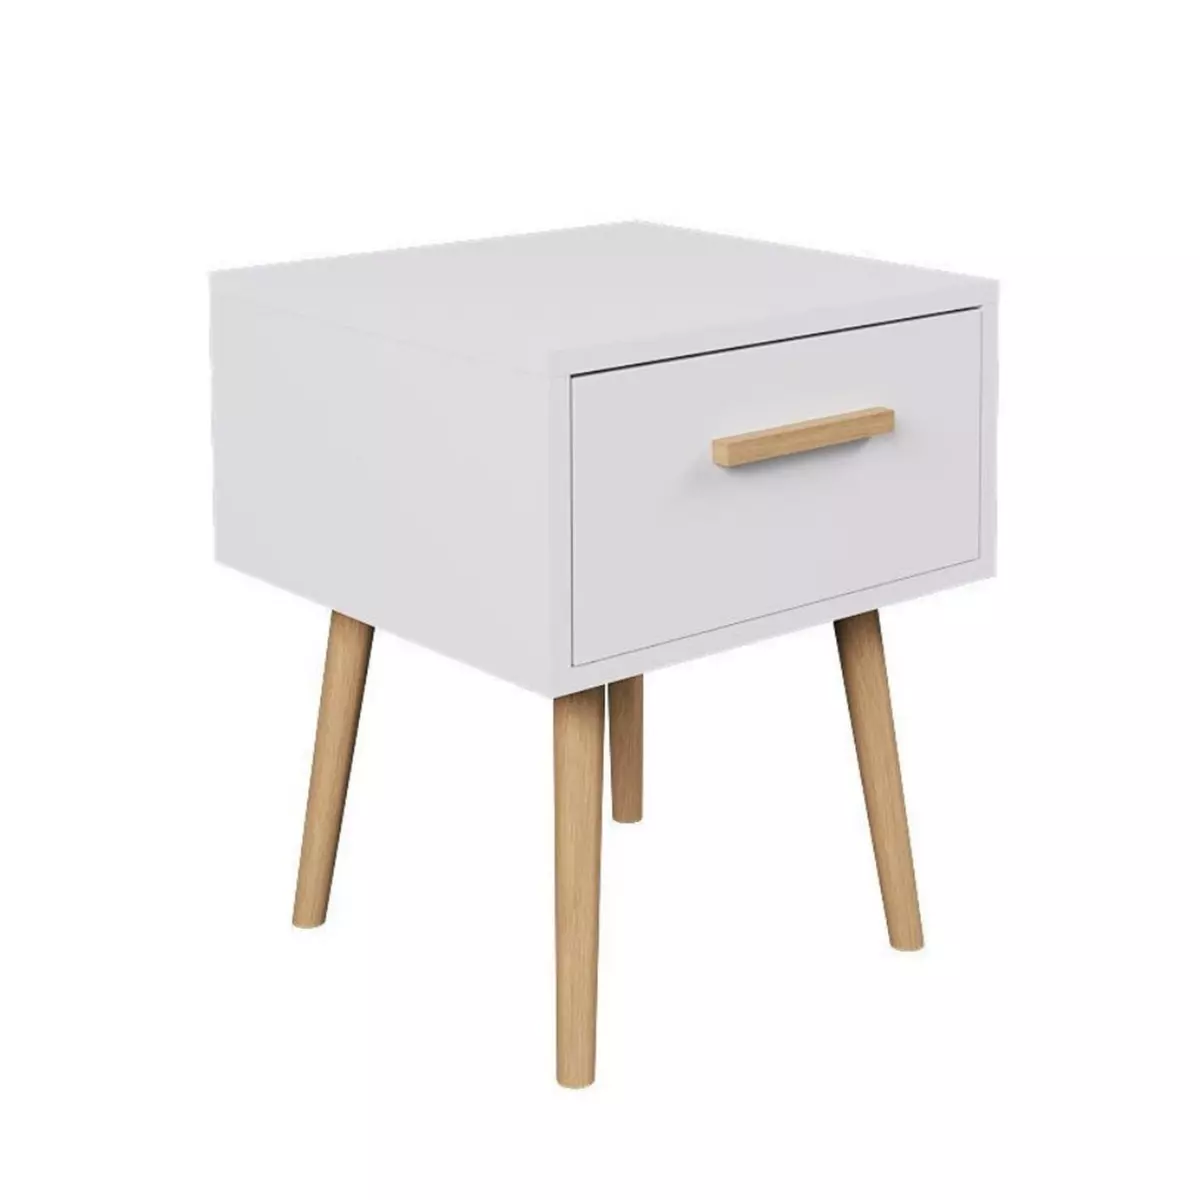 TOILINUX Table de Chevet 1 tiroir EDWING - 40 x 40 x 50 cm - Blanc et Marron - Rangement pour Chambre à Coucher, Salon